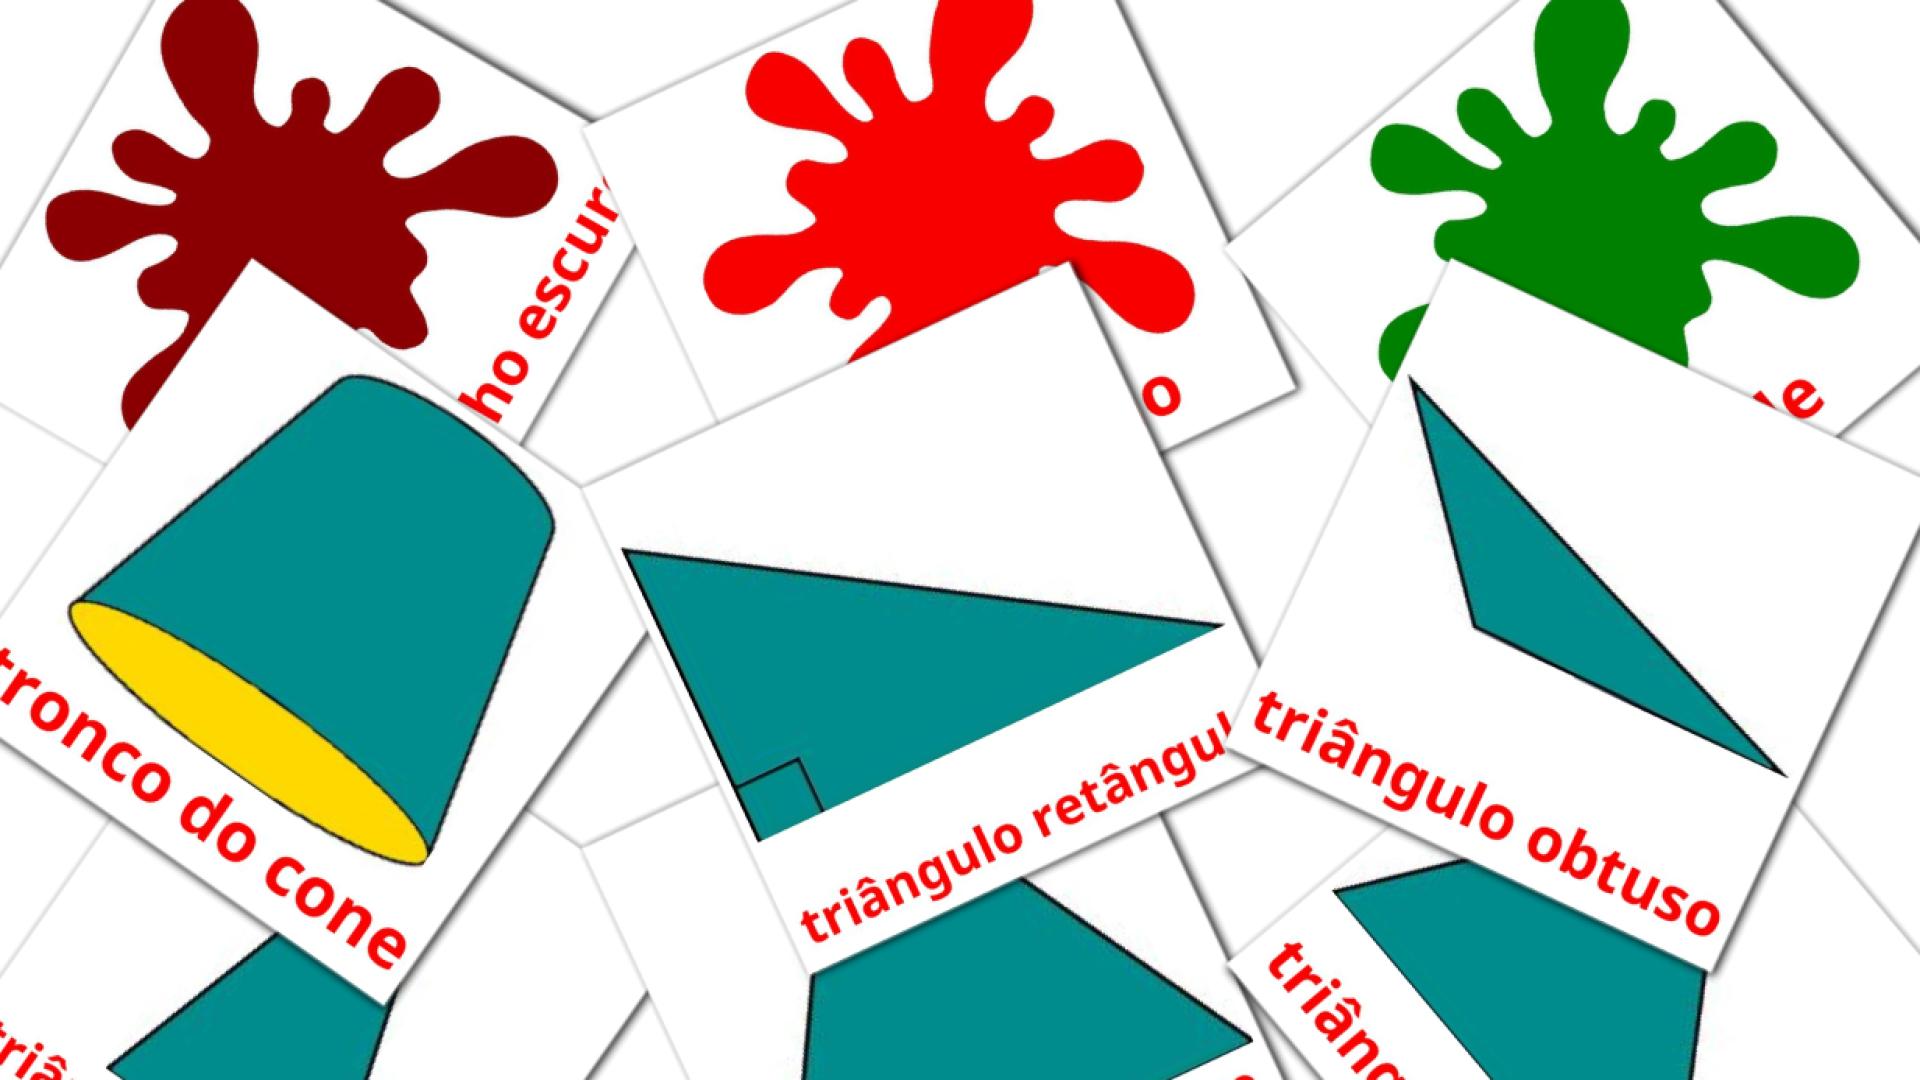 Cores e formas portuguese vocabulary flashcards